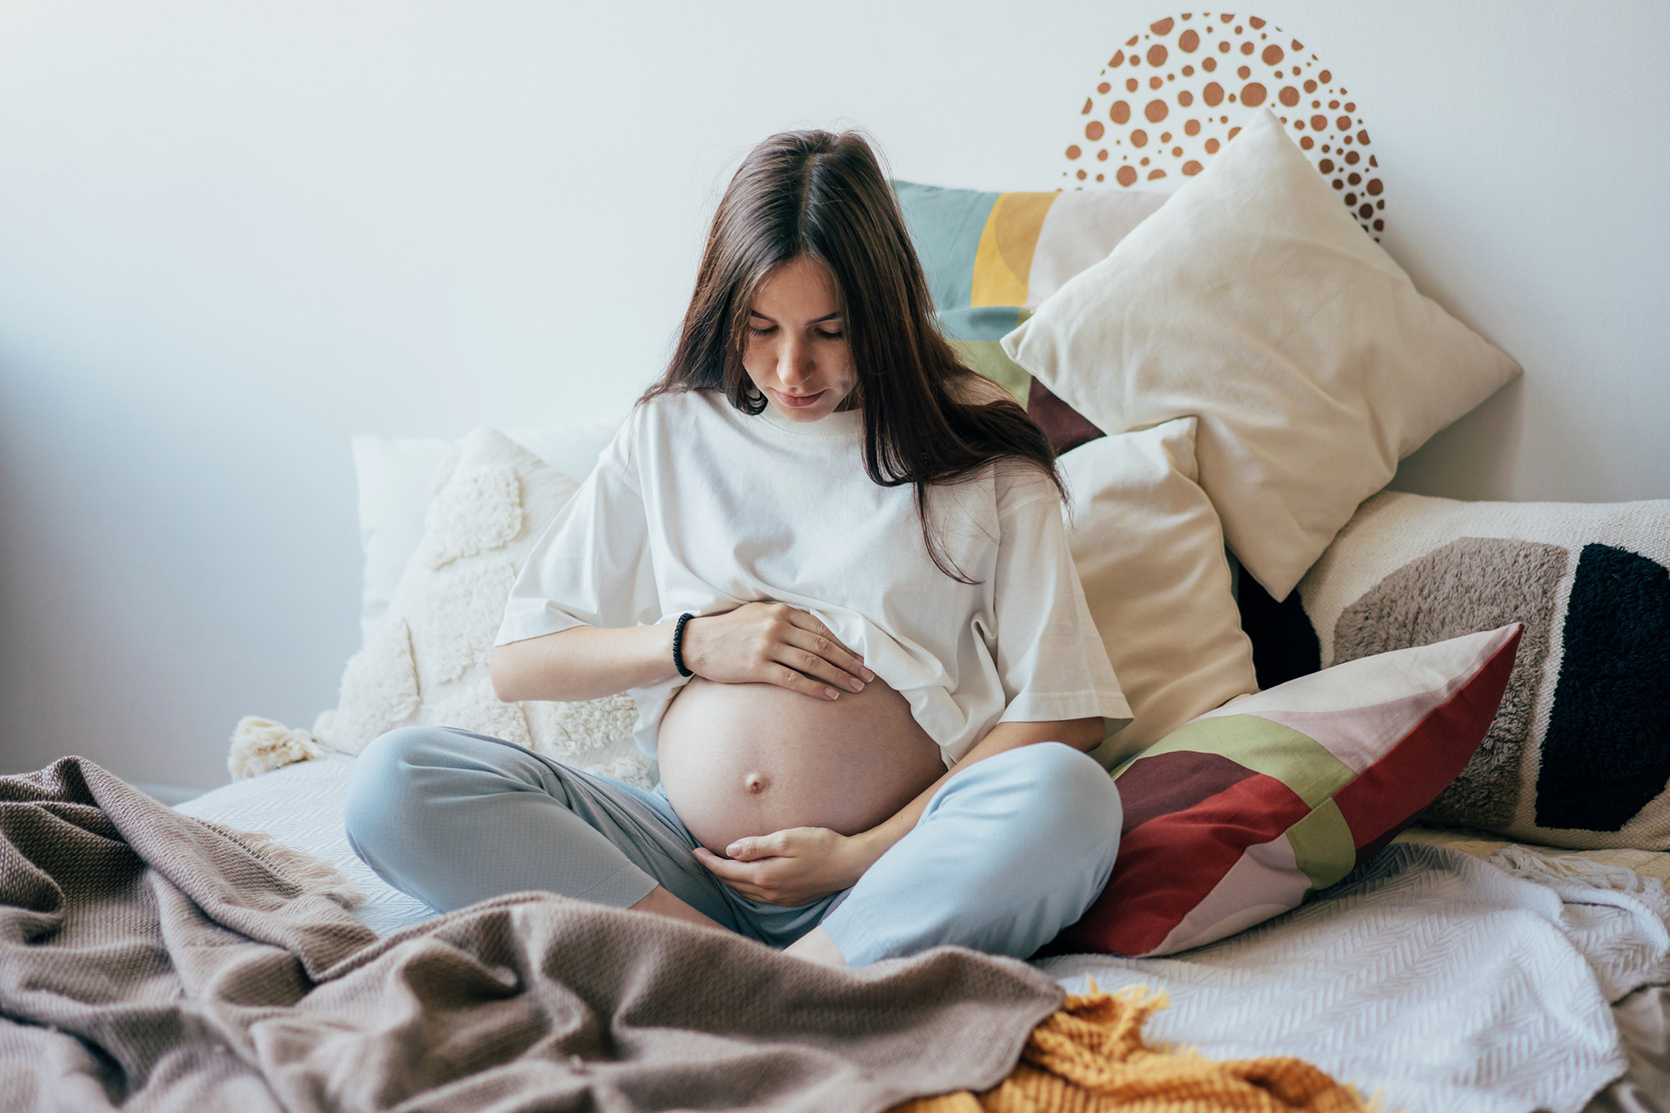 Wielowodzie w ciąży - przyczyny, objawy i skutki / istock